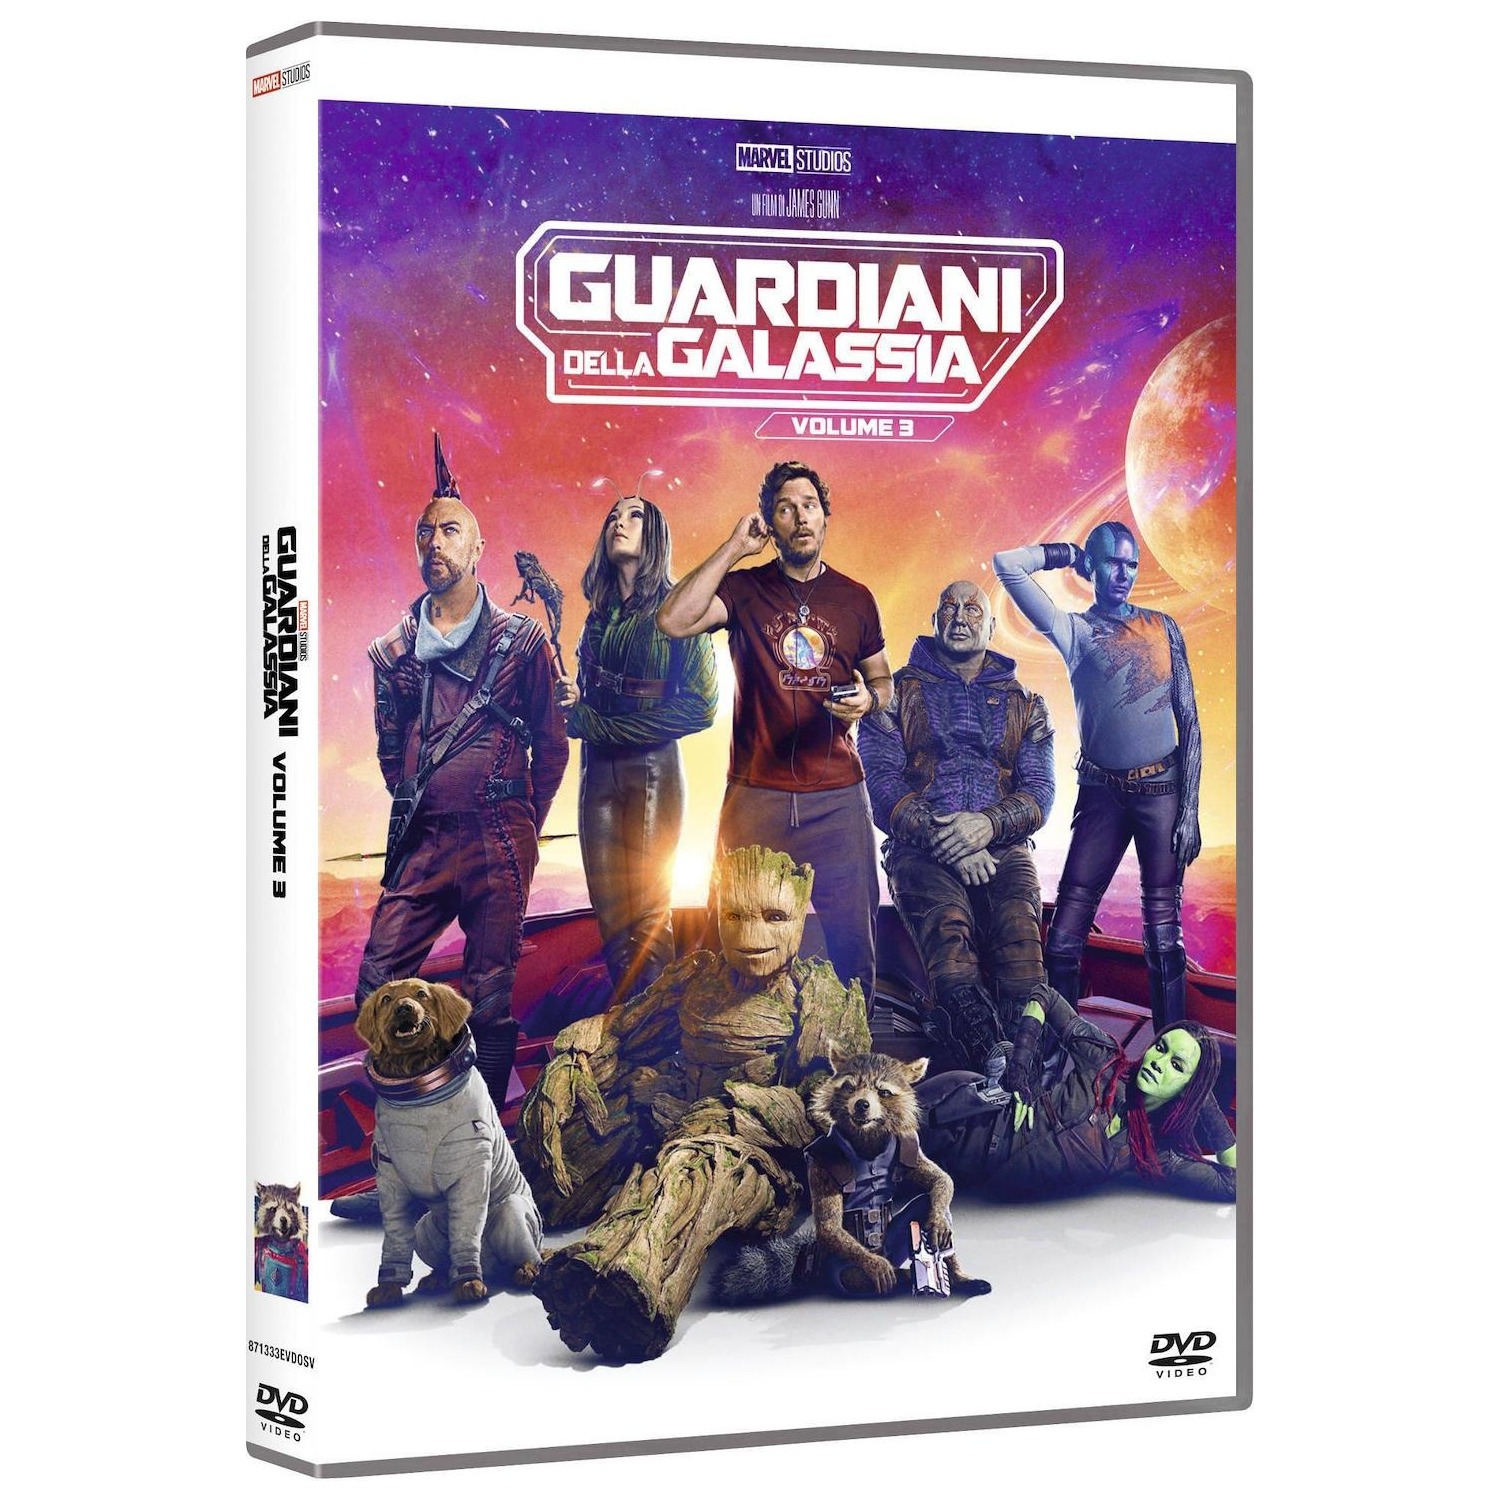 Immagine per DVD I Guardiani della Galassia Volume 3 da DIMOStore